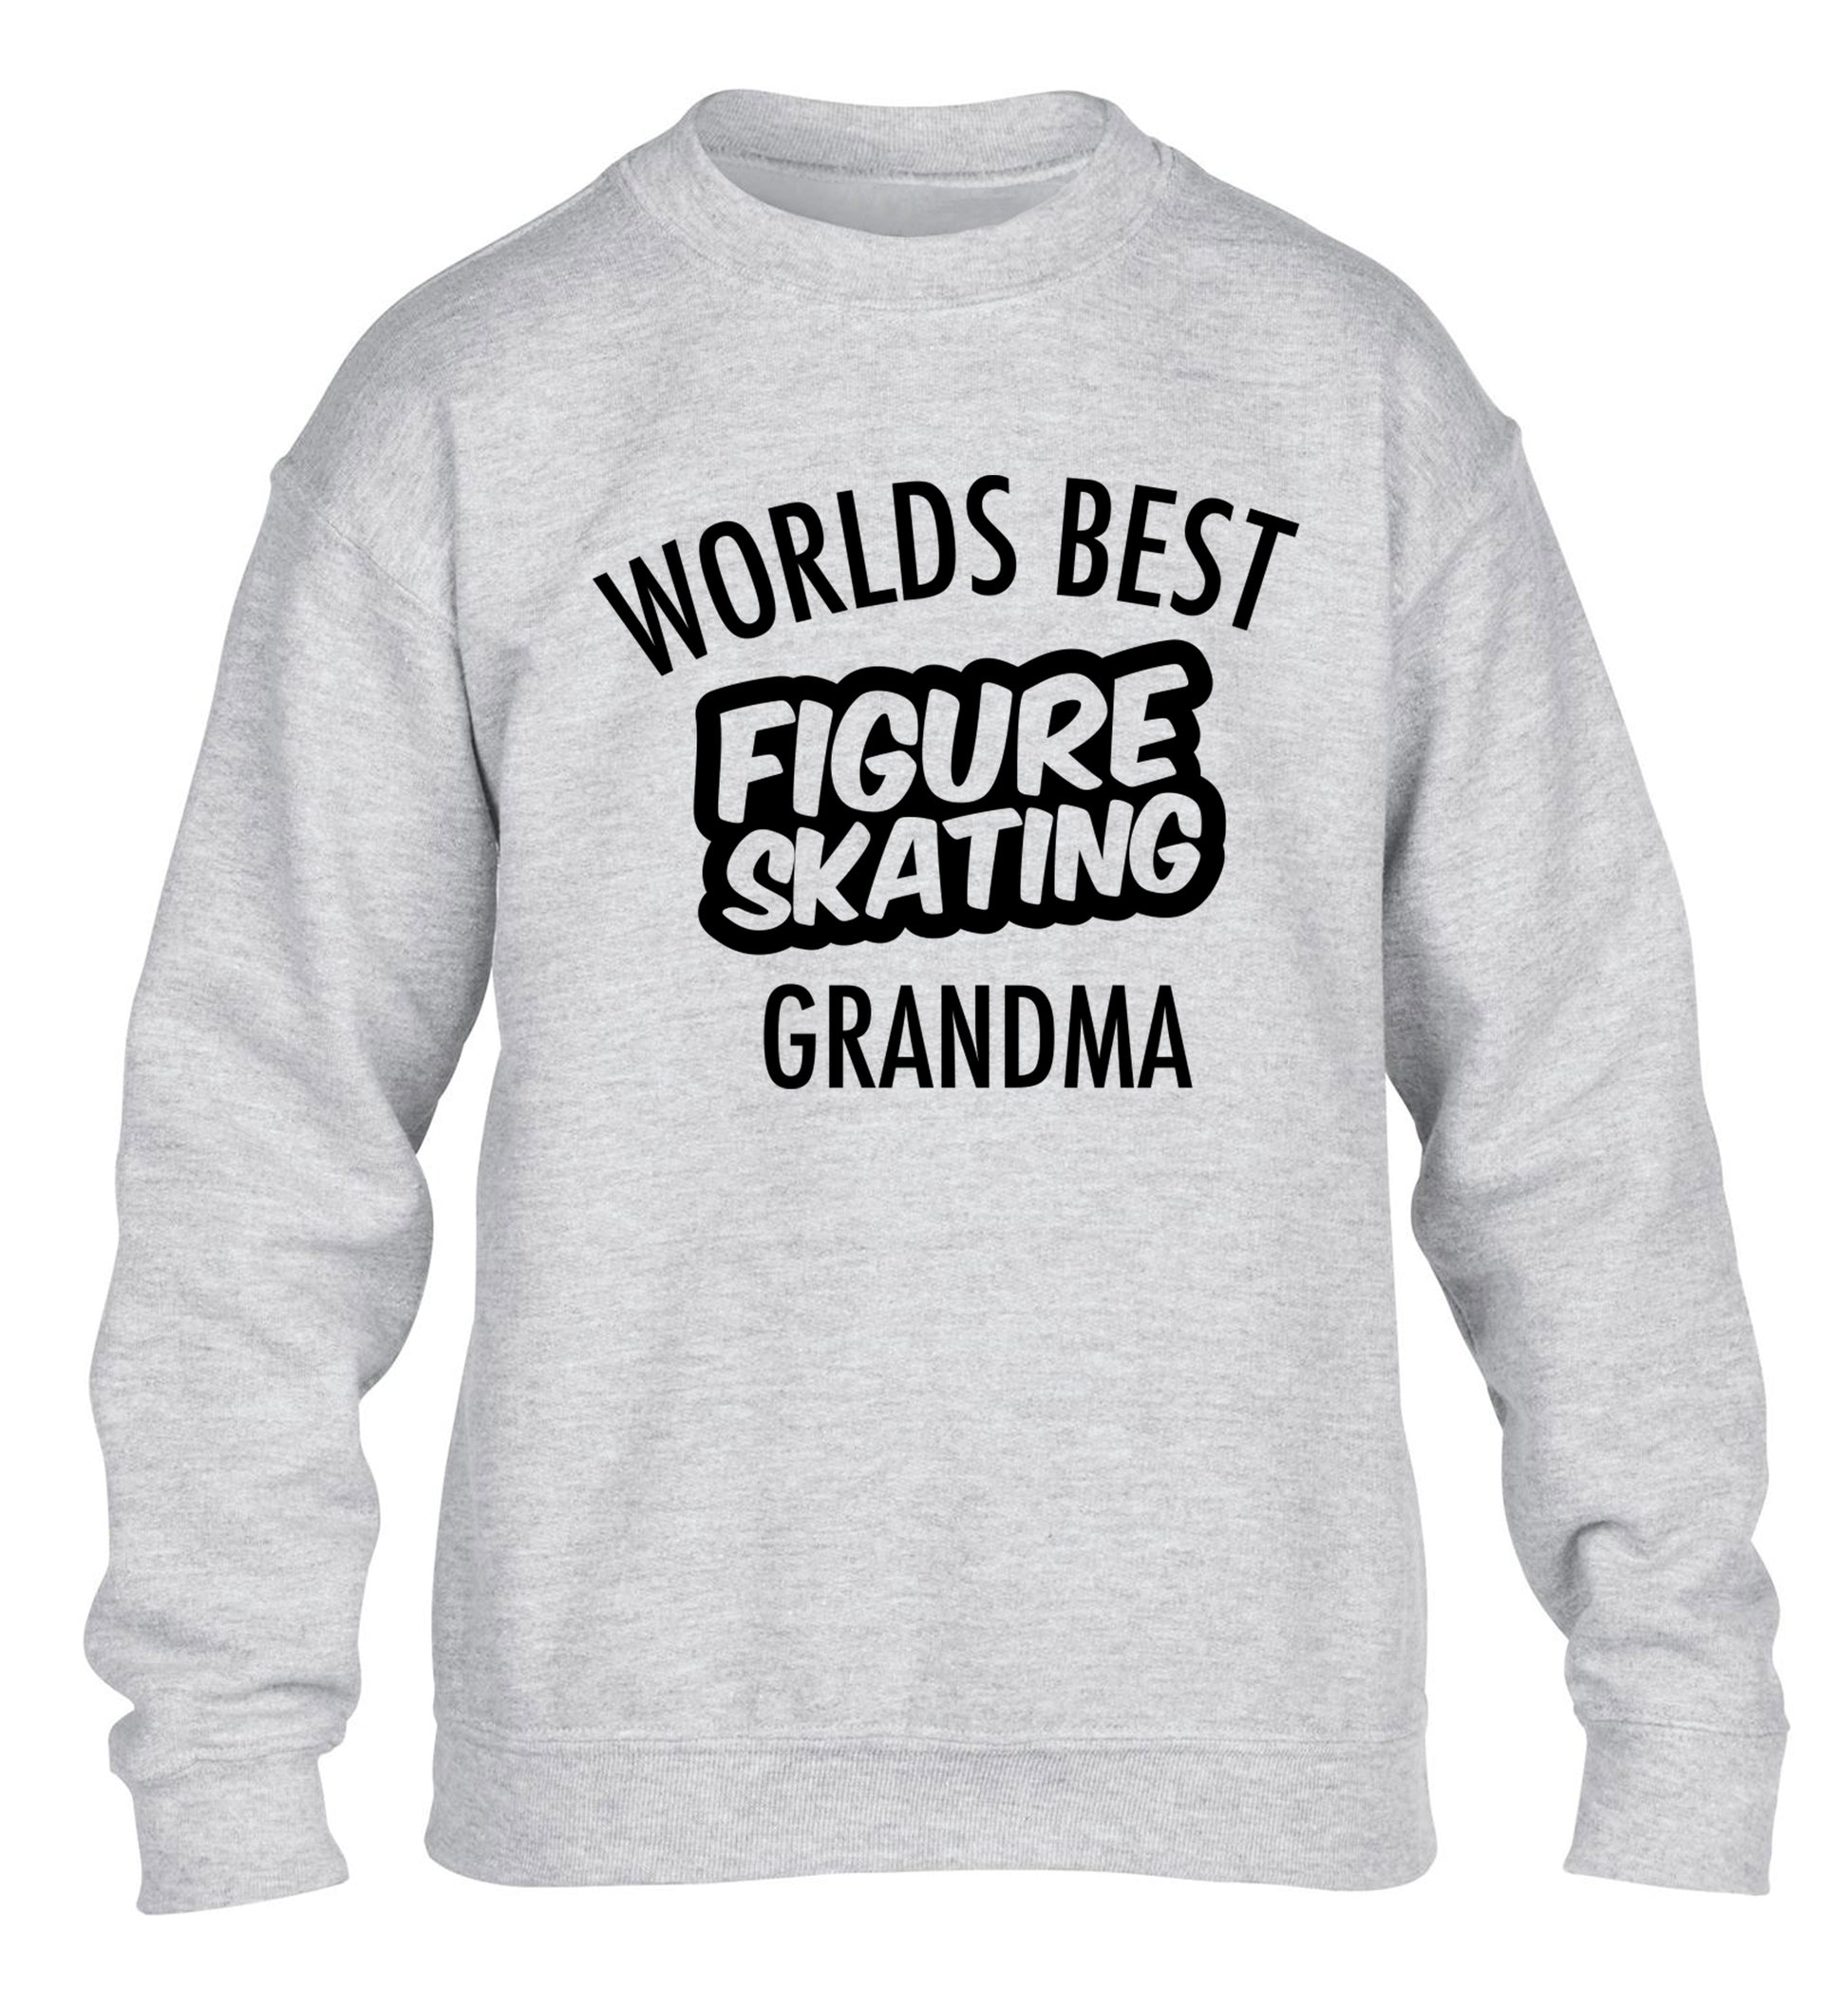 Worlds best figure skating grandma children's grey sweater 12-14 Years